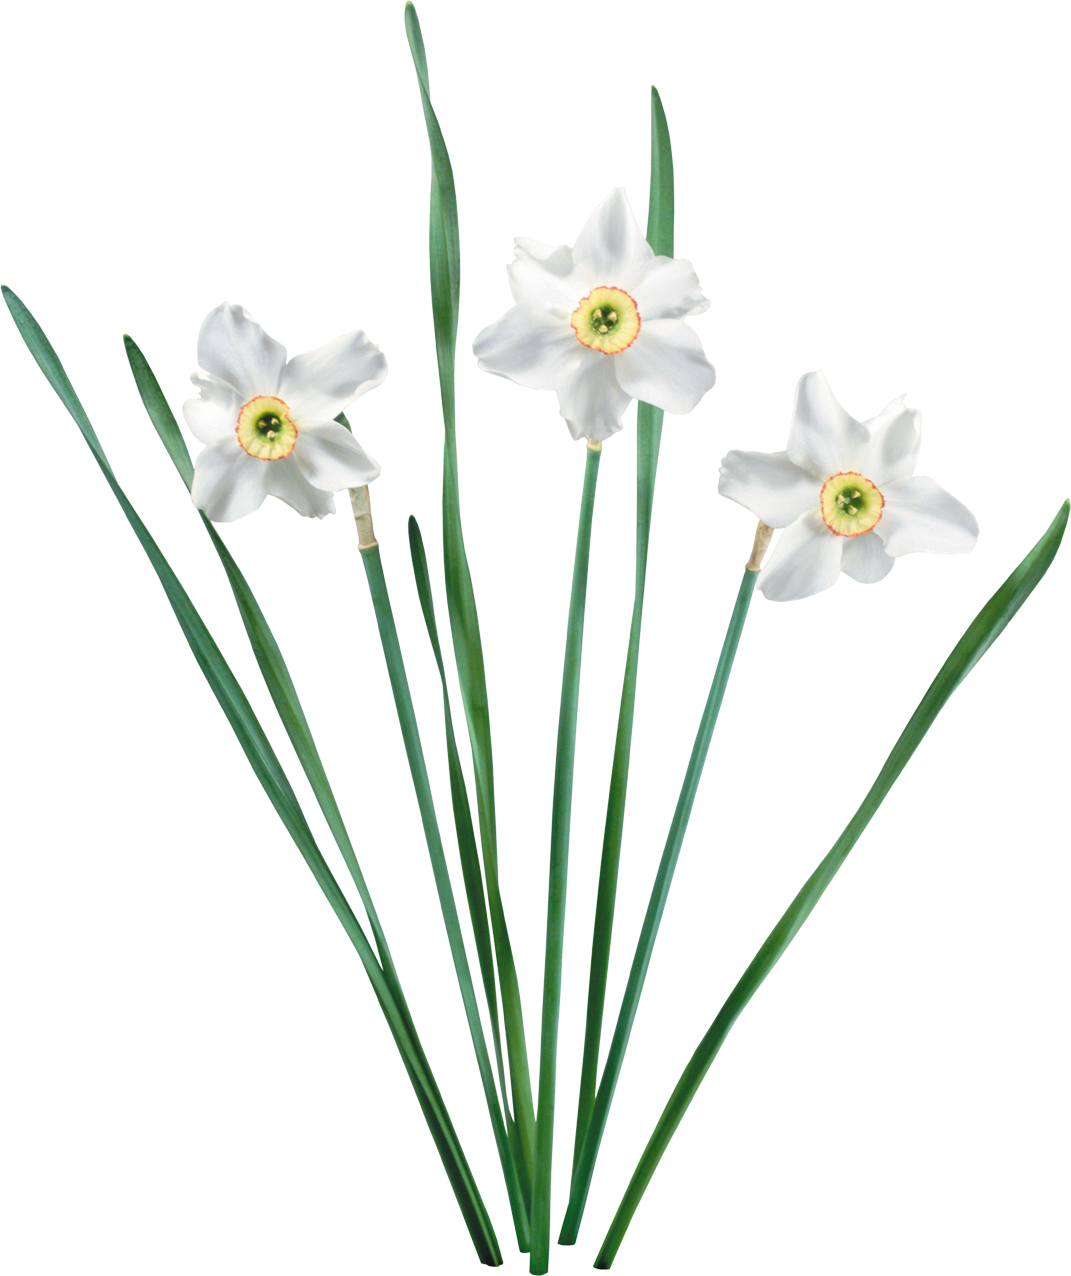 Игла нарцисса. Нарцисс амариллис. Нарцисс цветок. Нарцисс тацетта. Нарцисс узколистный.